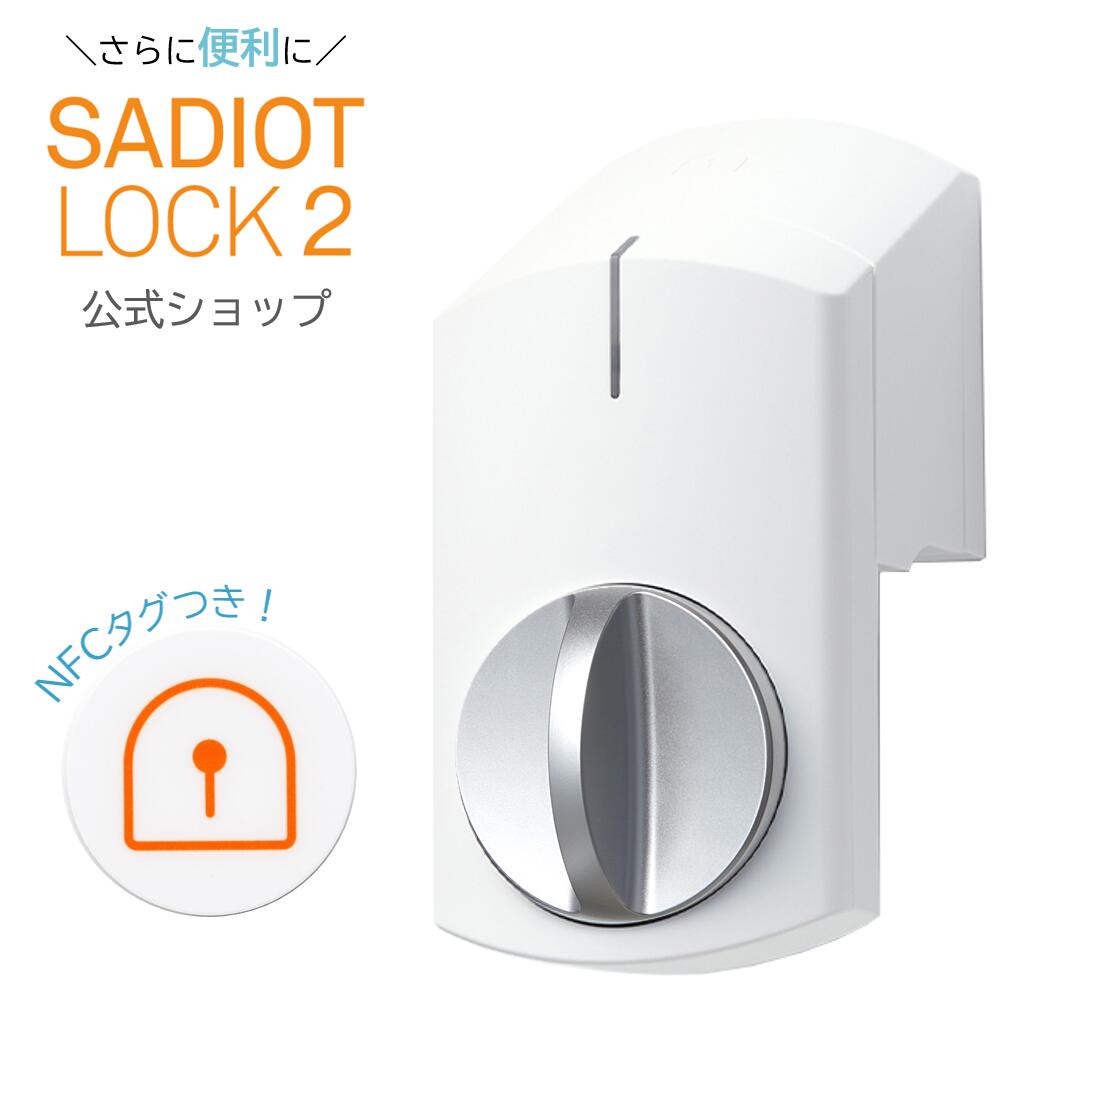 新製品！SADIOT LOCK2（サディオロックツー）ホワイト スマートロック Apple Watch対応 玄関 鍵 ドア オートロック ドアロック スマートキー スマートホーム IOT 自動施錠 防犯 工事不要 MHP-SLS21-WH